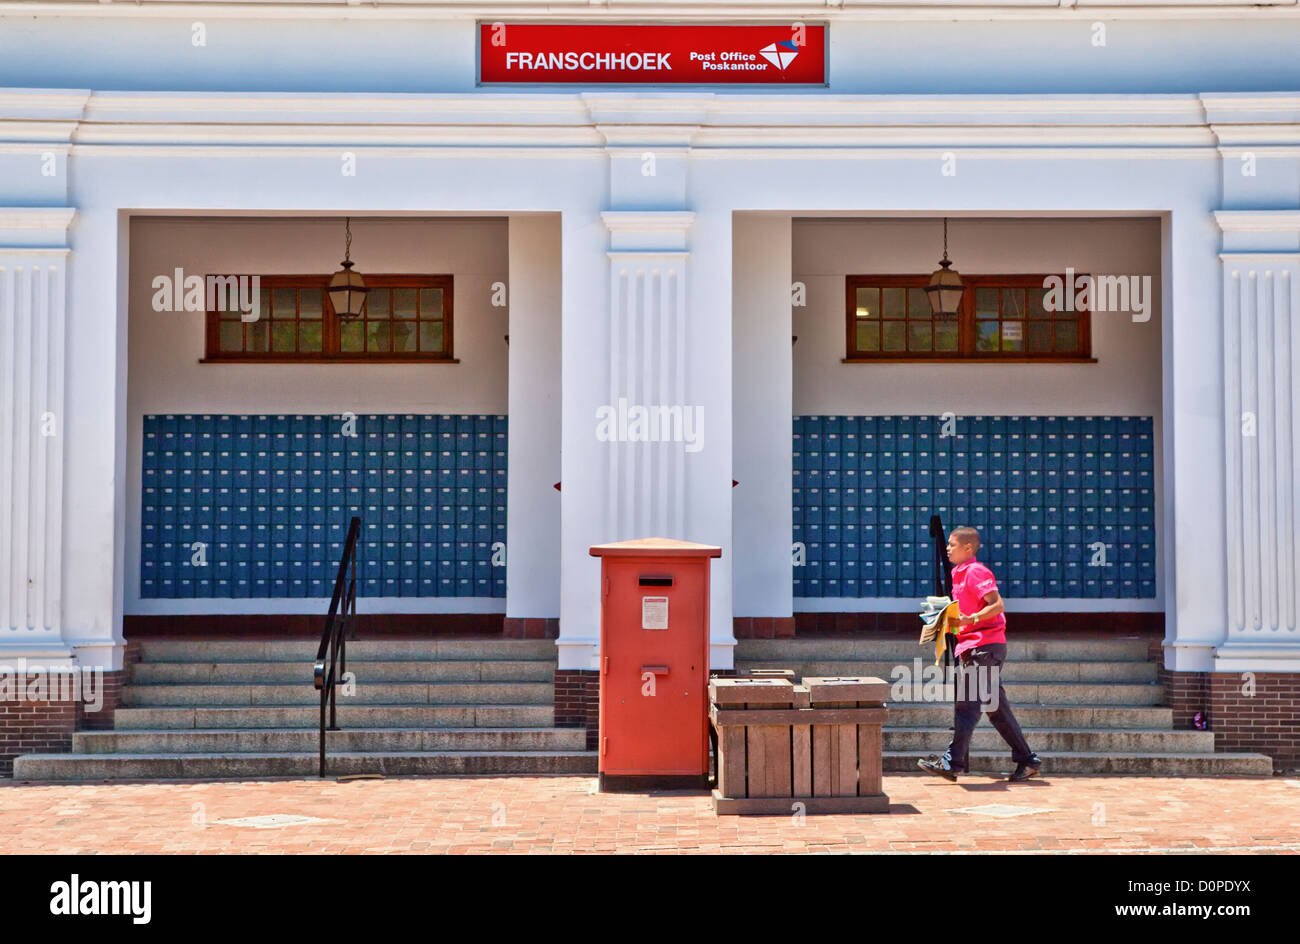 La oficina de correos en Franschhoek, un popular destino turístico en el Cabo Occidental, Sudáfrica Foto de stock